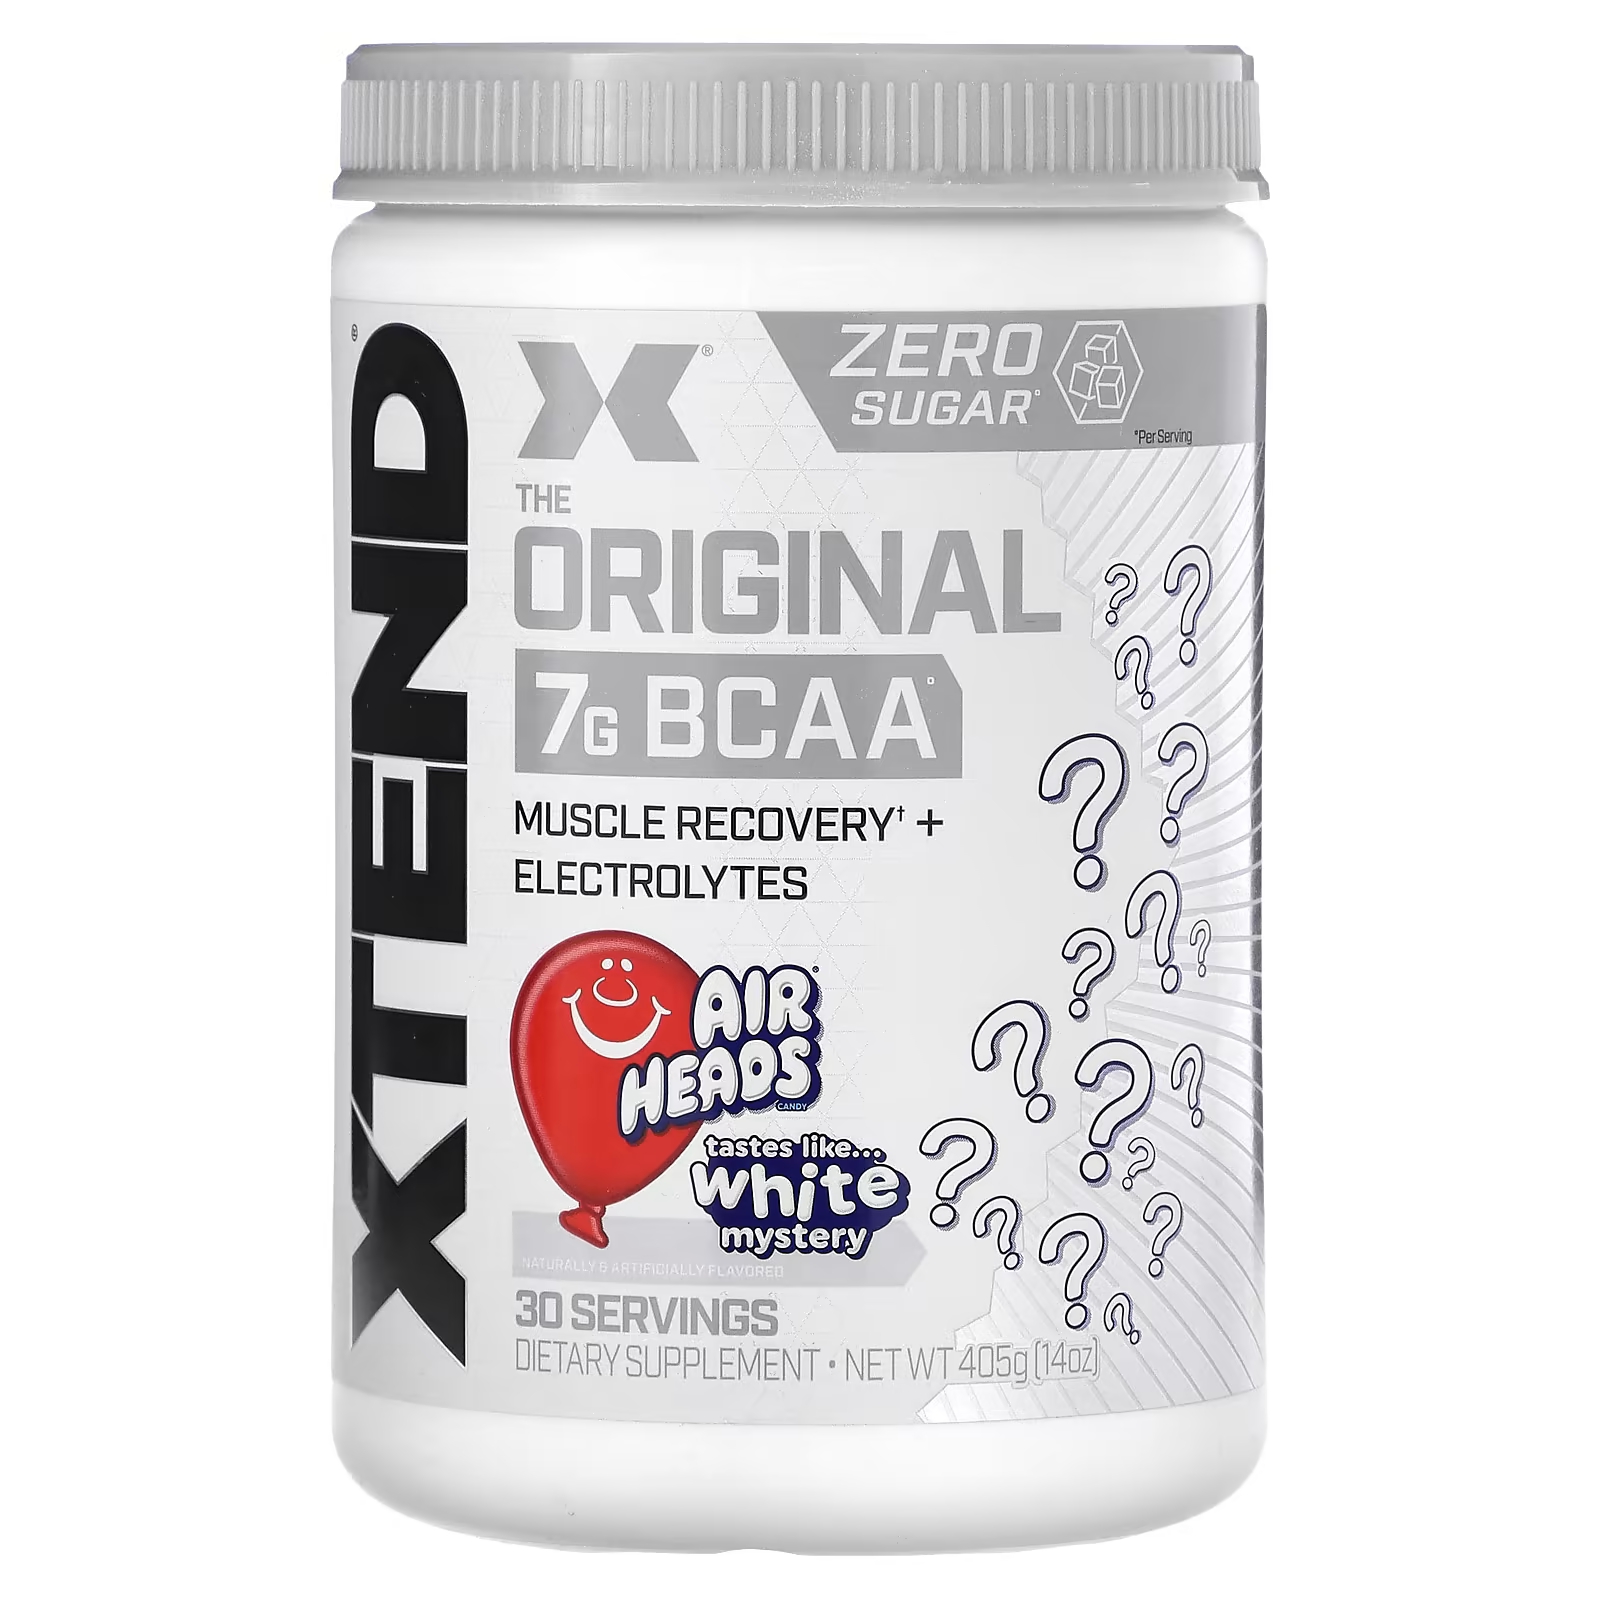 Пищевая добавка Xtend The Original 7G BCAA xtend the original 7 г аминокислот с разветвленной цепью bcaa со вкусом голубой малины 1 26 кг 2 78 фунта